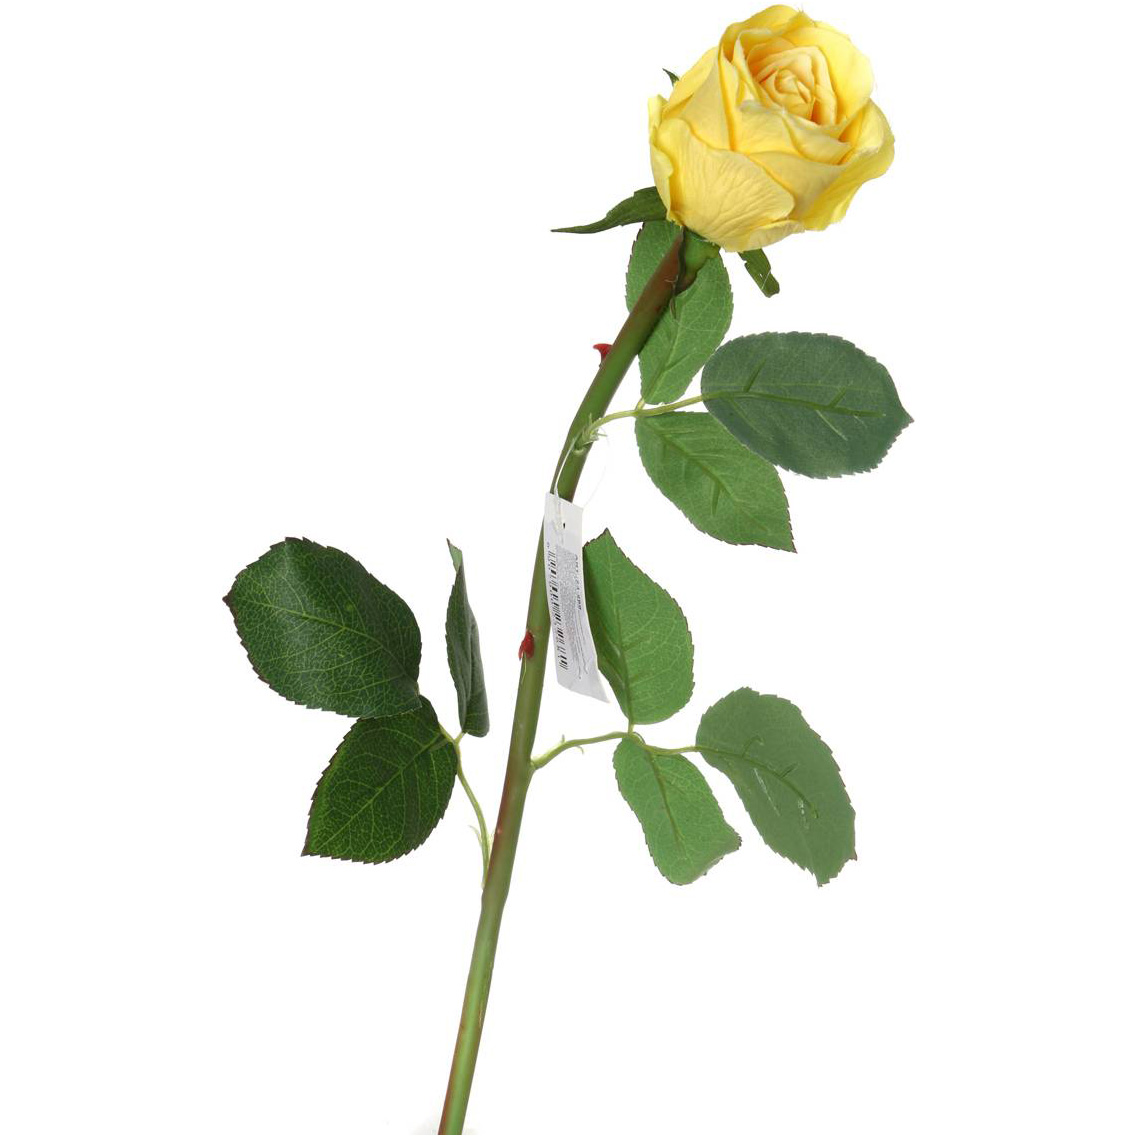 Цветок Роза (50 см), размер 50 см lfr956581 Цветок Роза (50 см) - фото 1